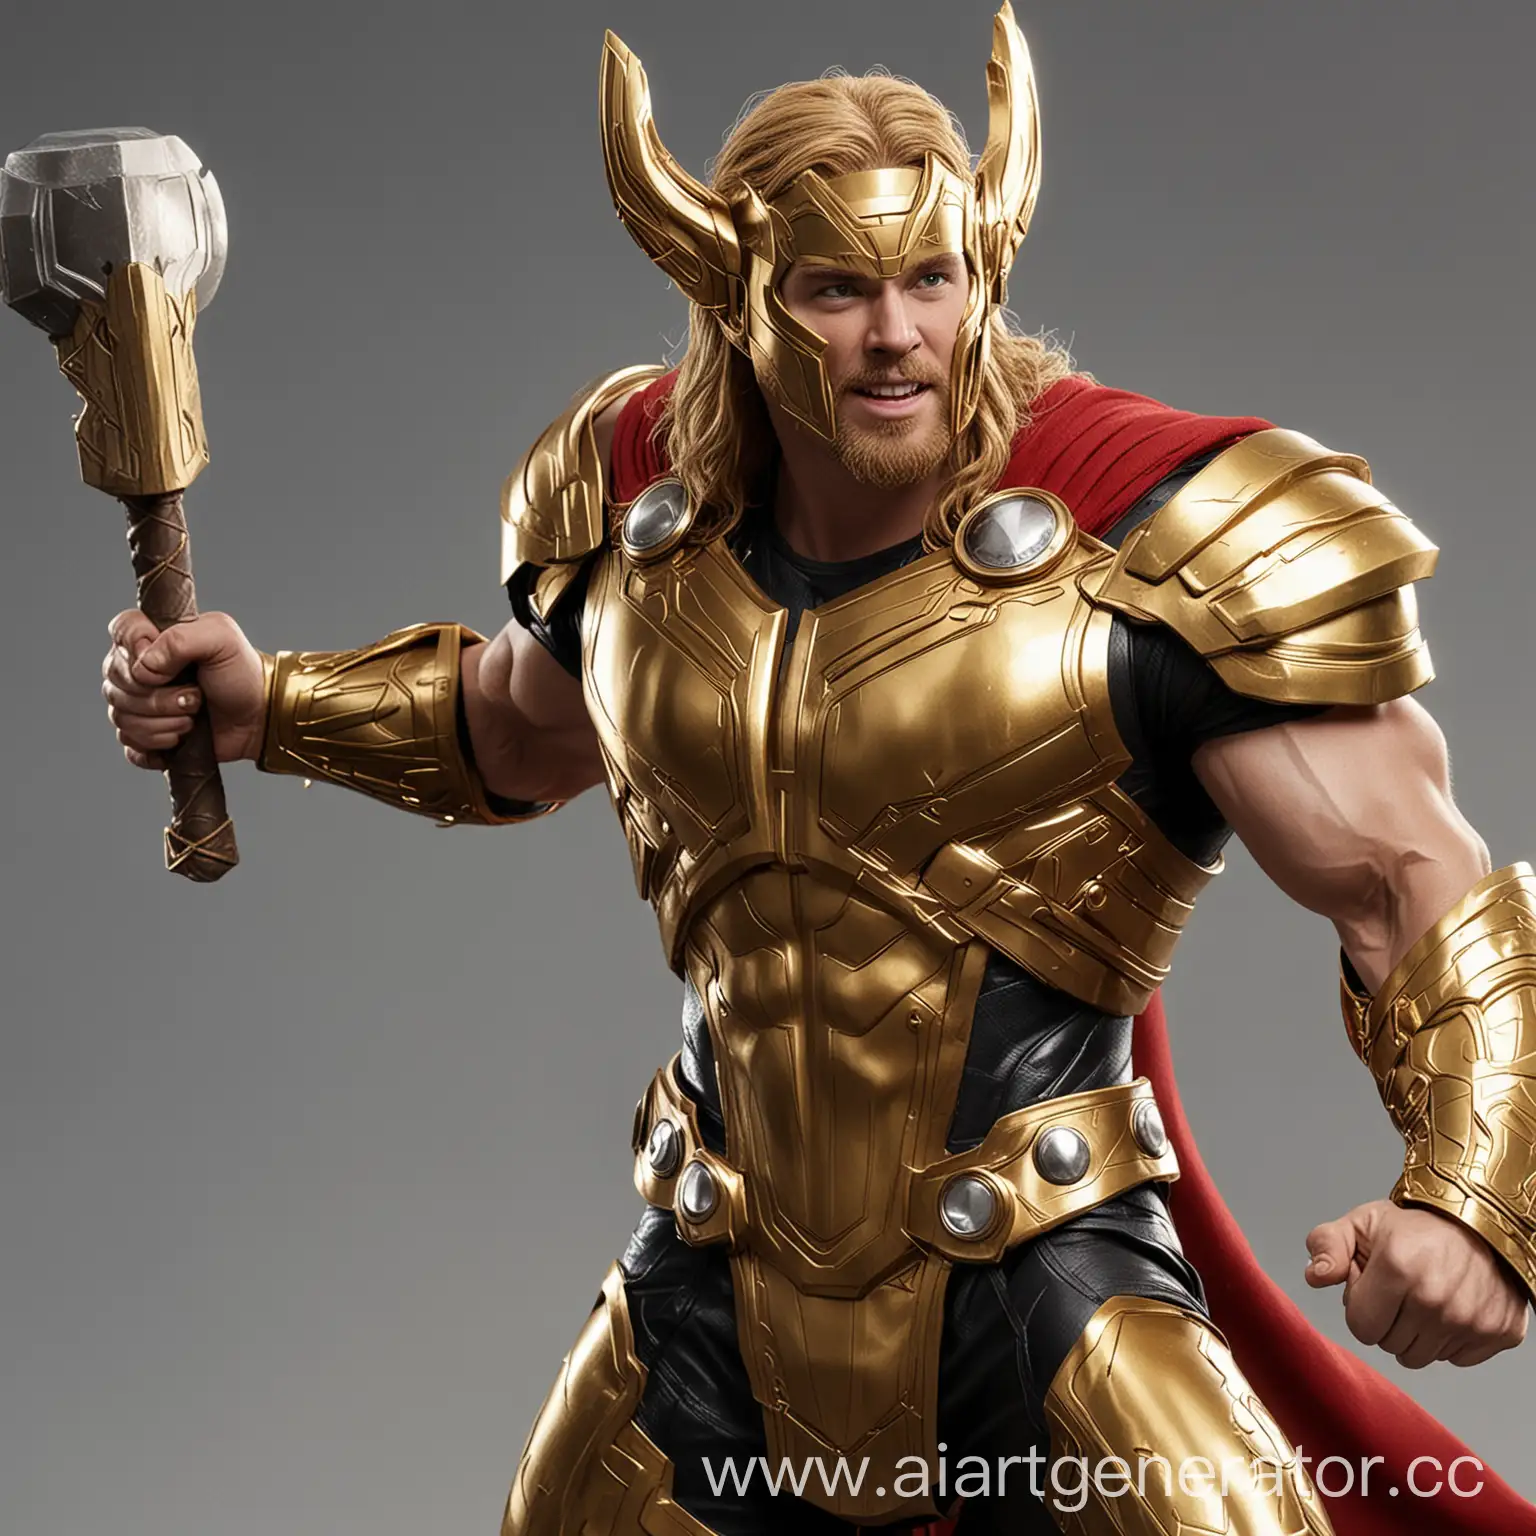 Golden Thor from Marvel